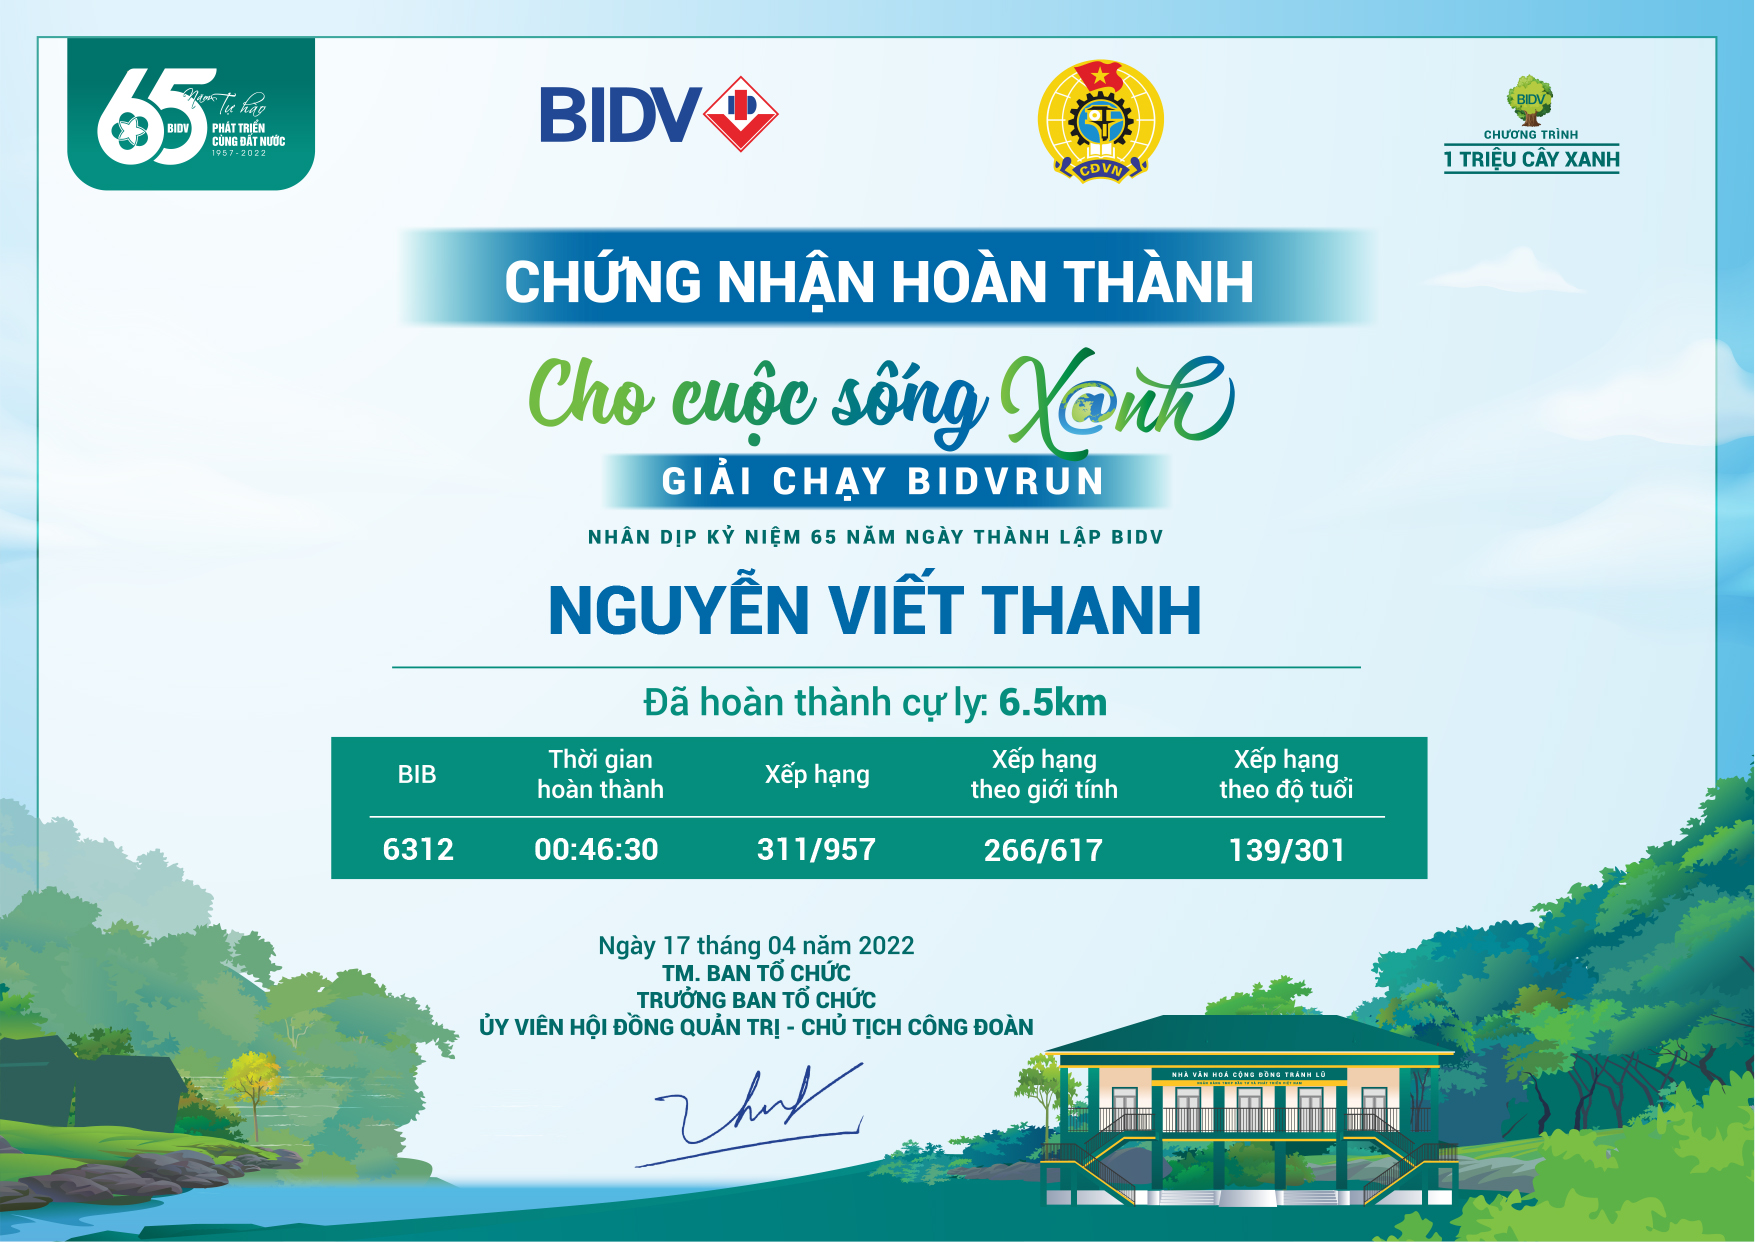 6312 - Nguyễn Viết Thanh